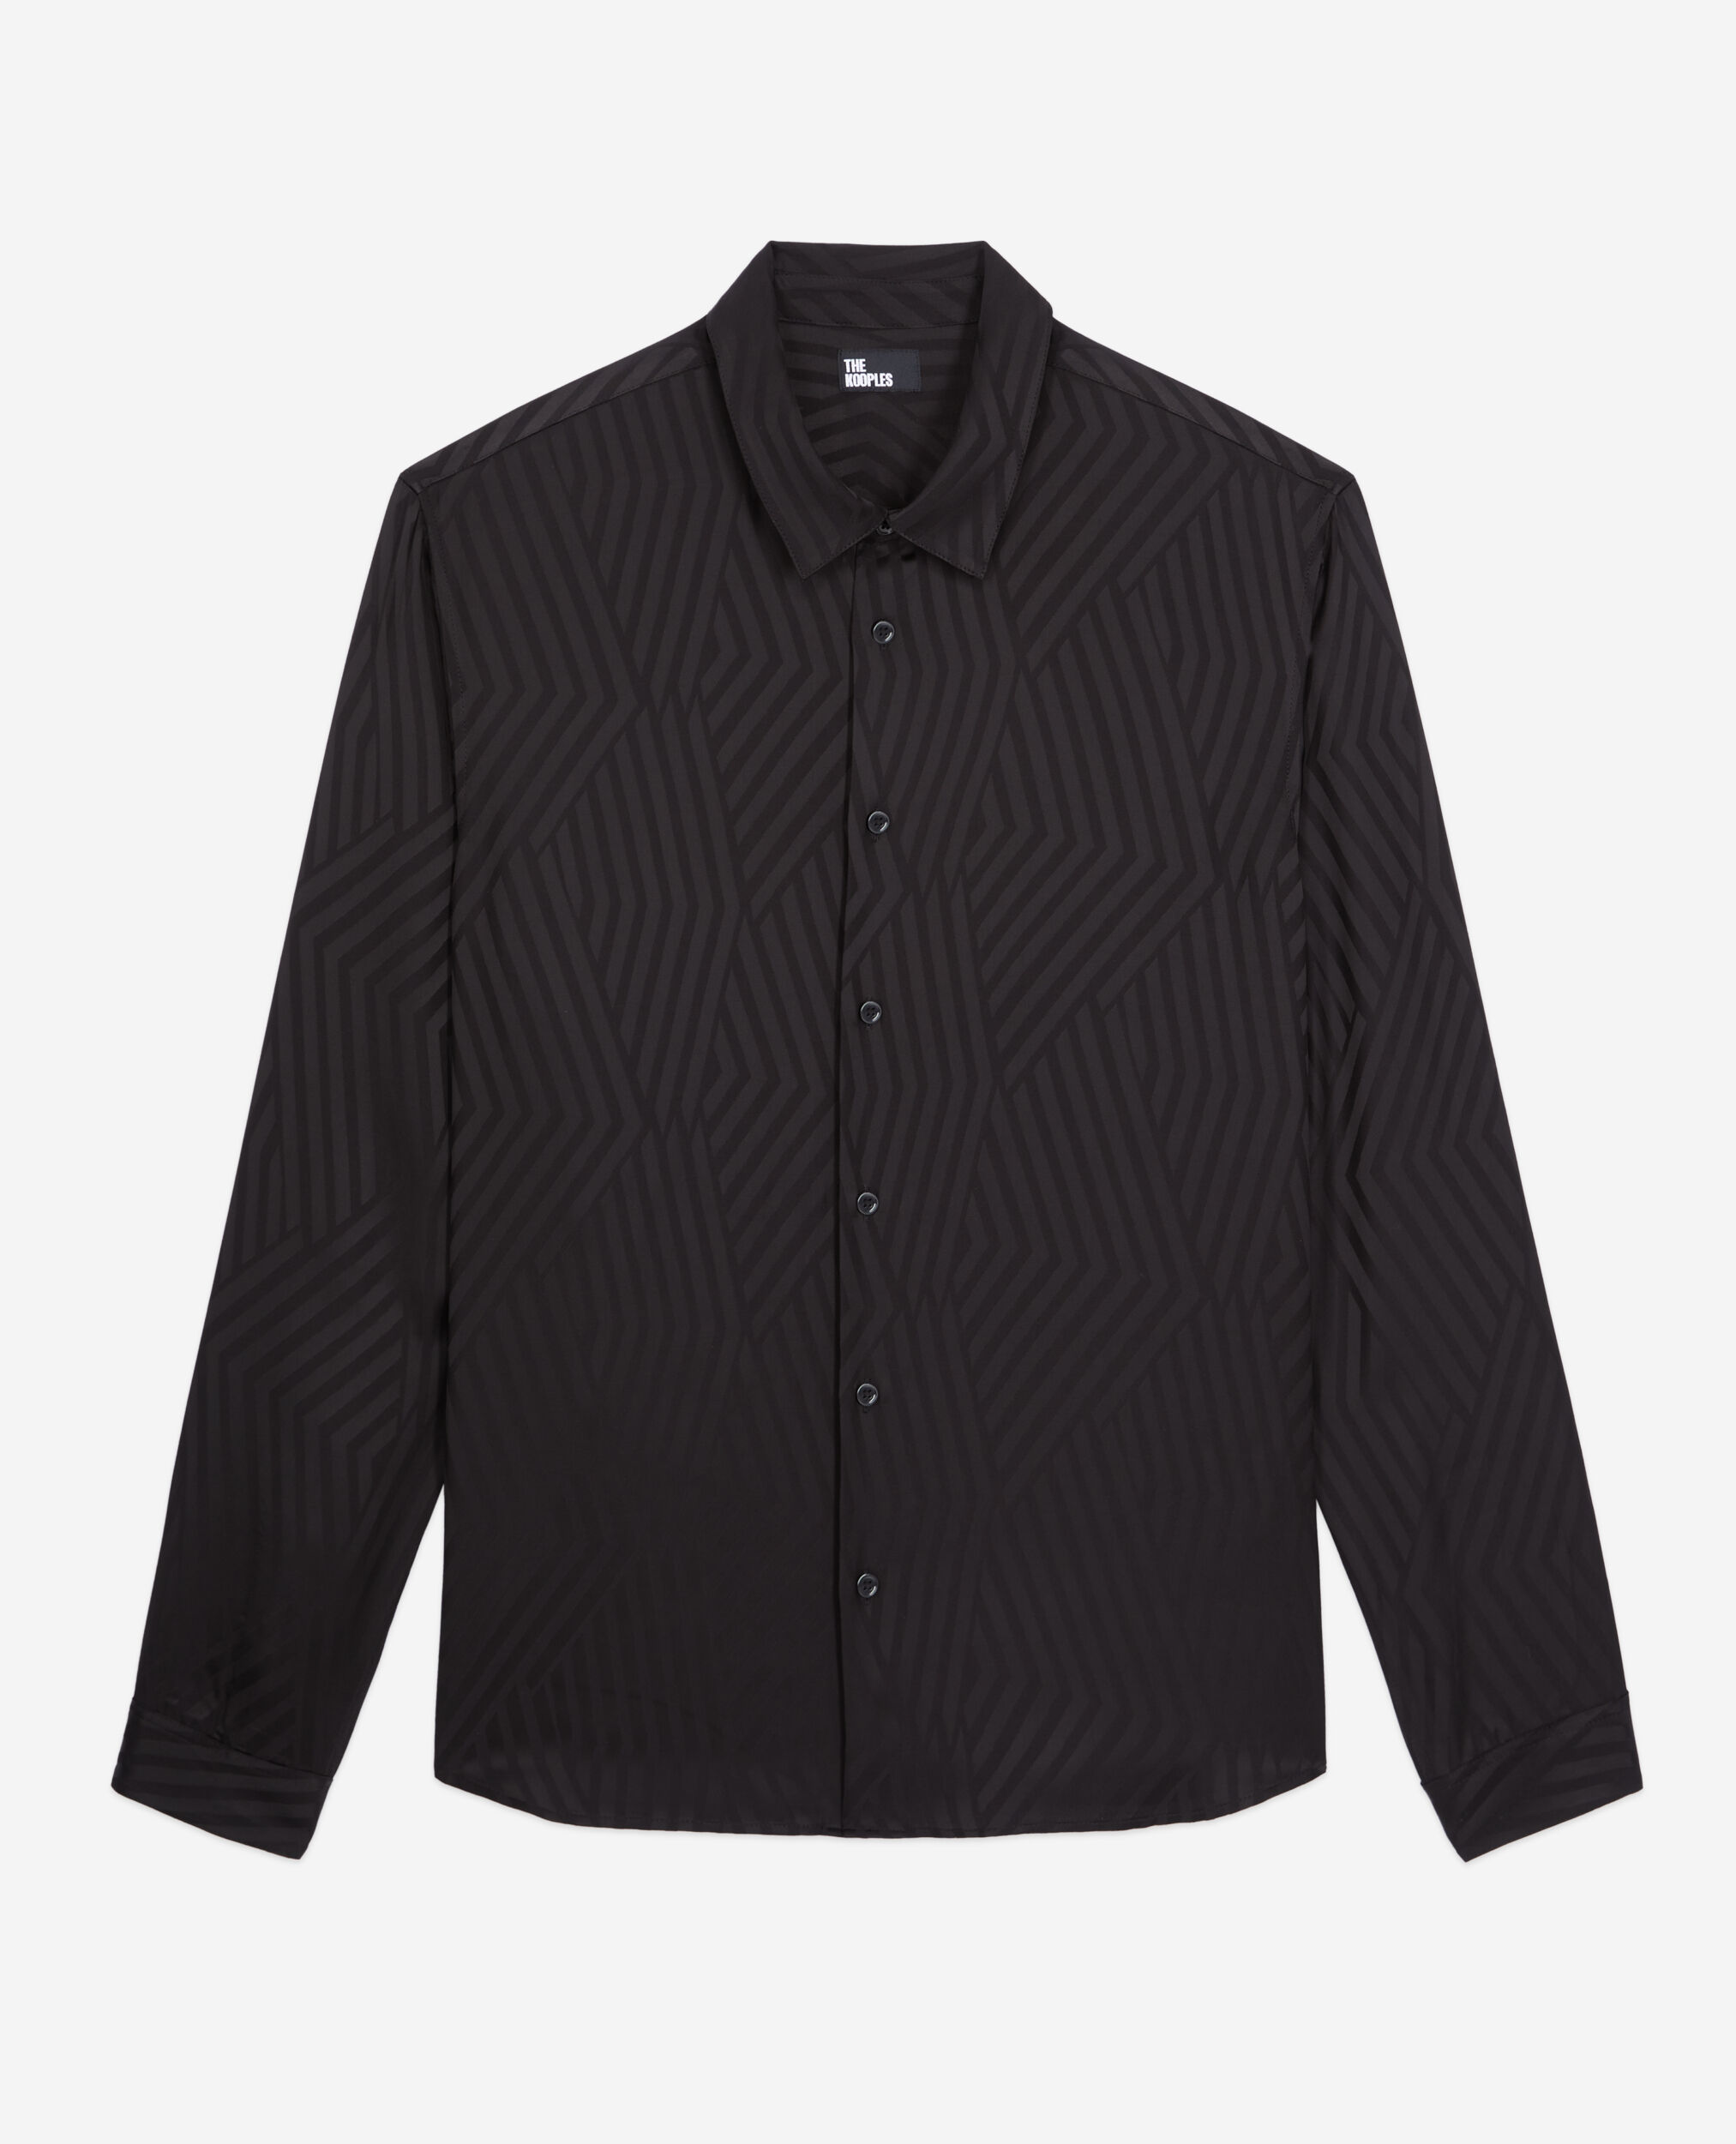 Black geometric jacquard - Kooples shirt | The US